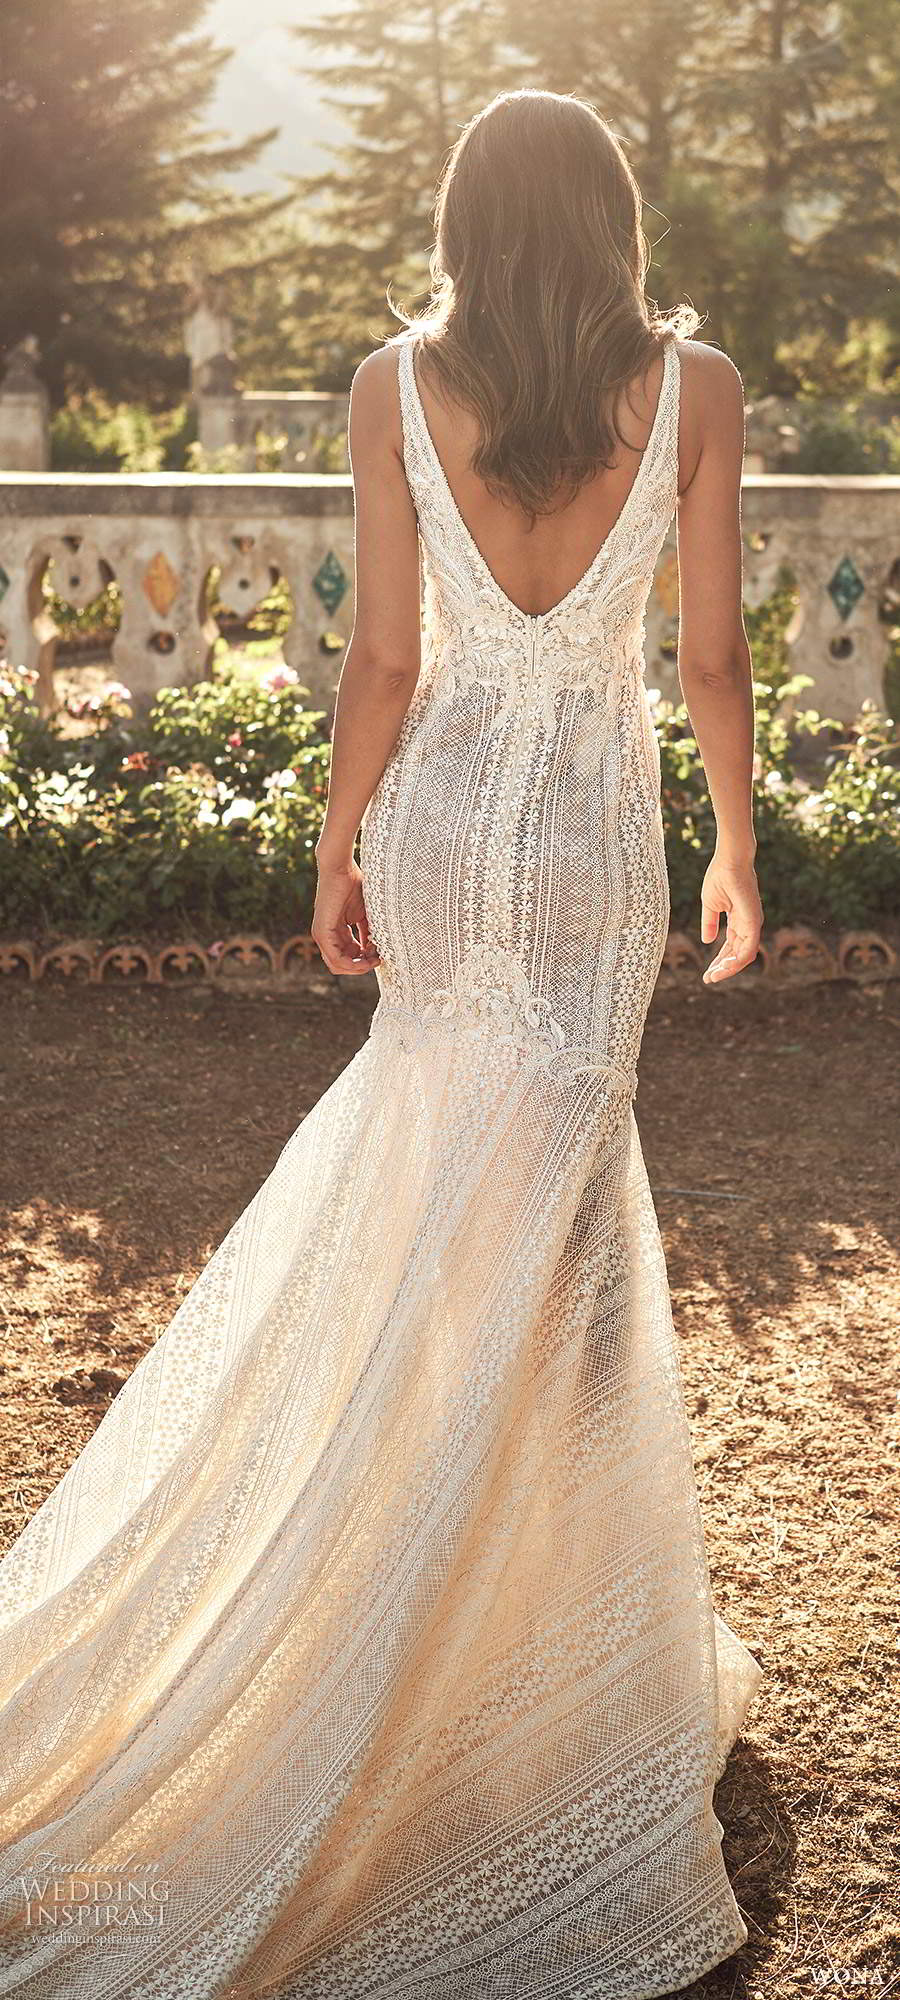 wona fall 2020 bridal sleeveless straps plunging v neckline fully embellished lace fit flare mermaid wedding dress v back chapel train (15) bv